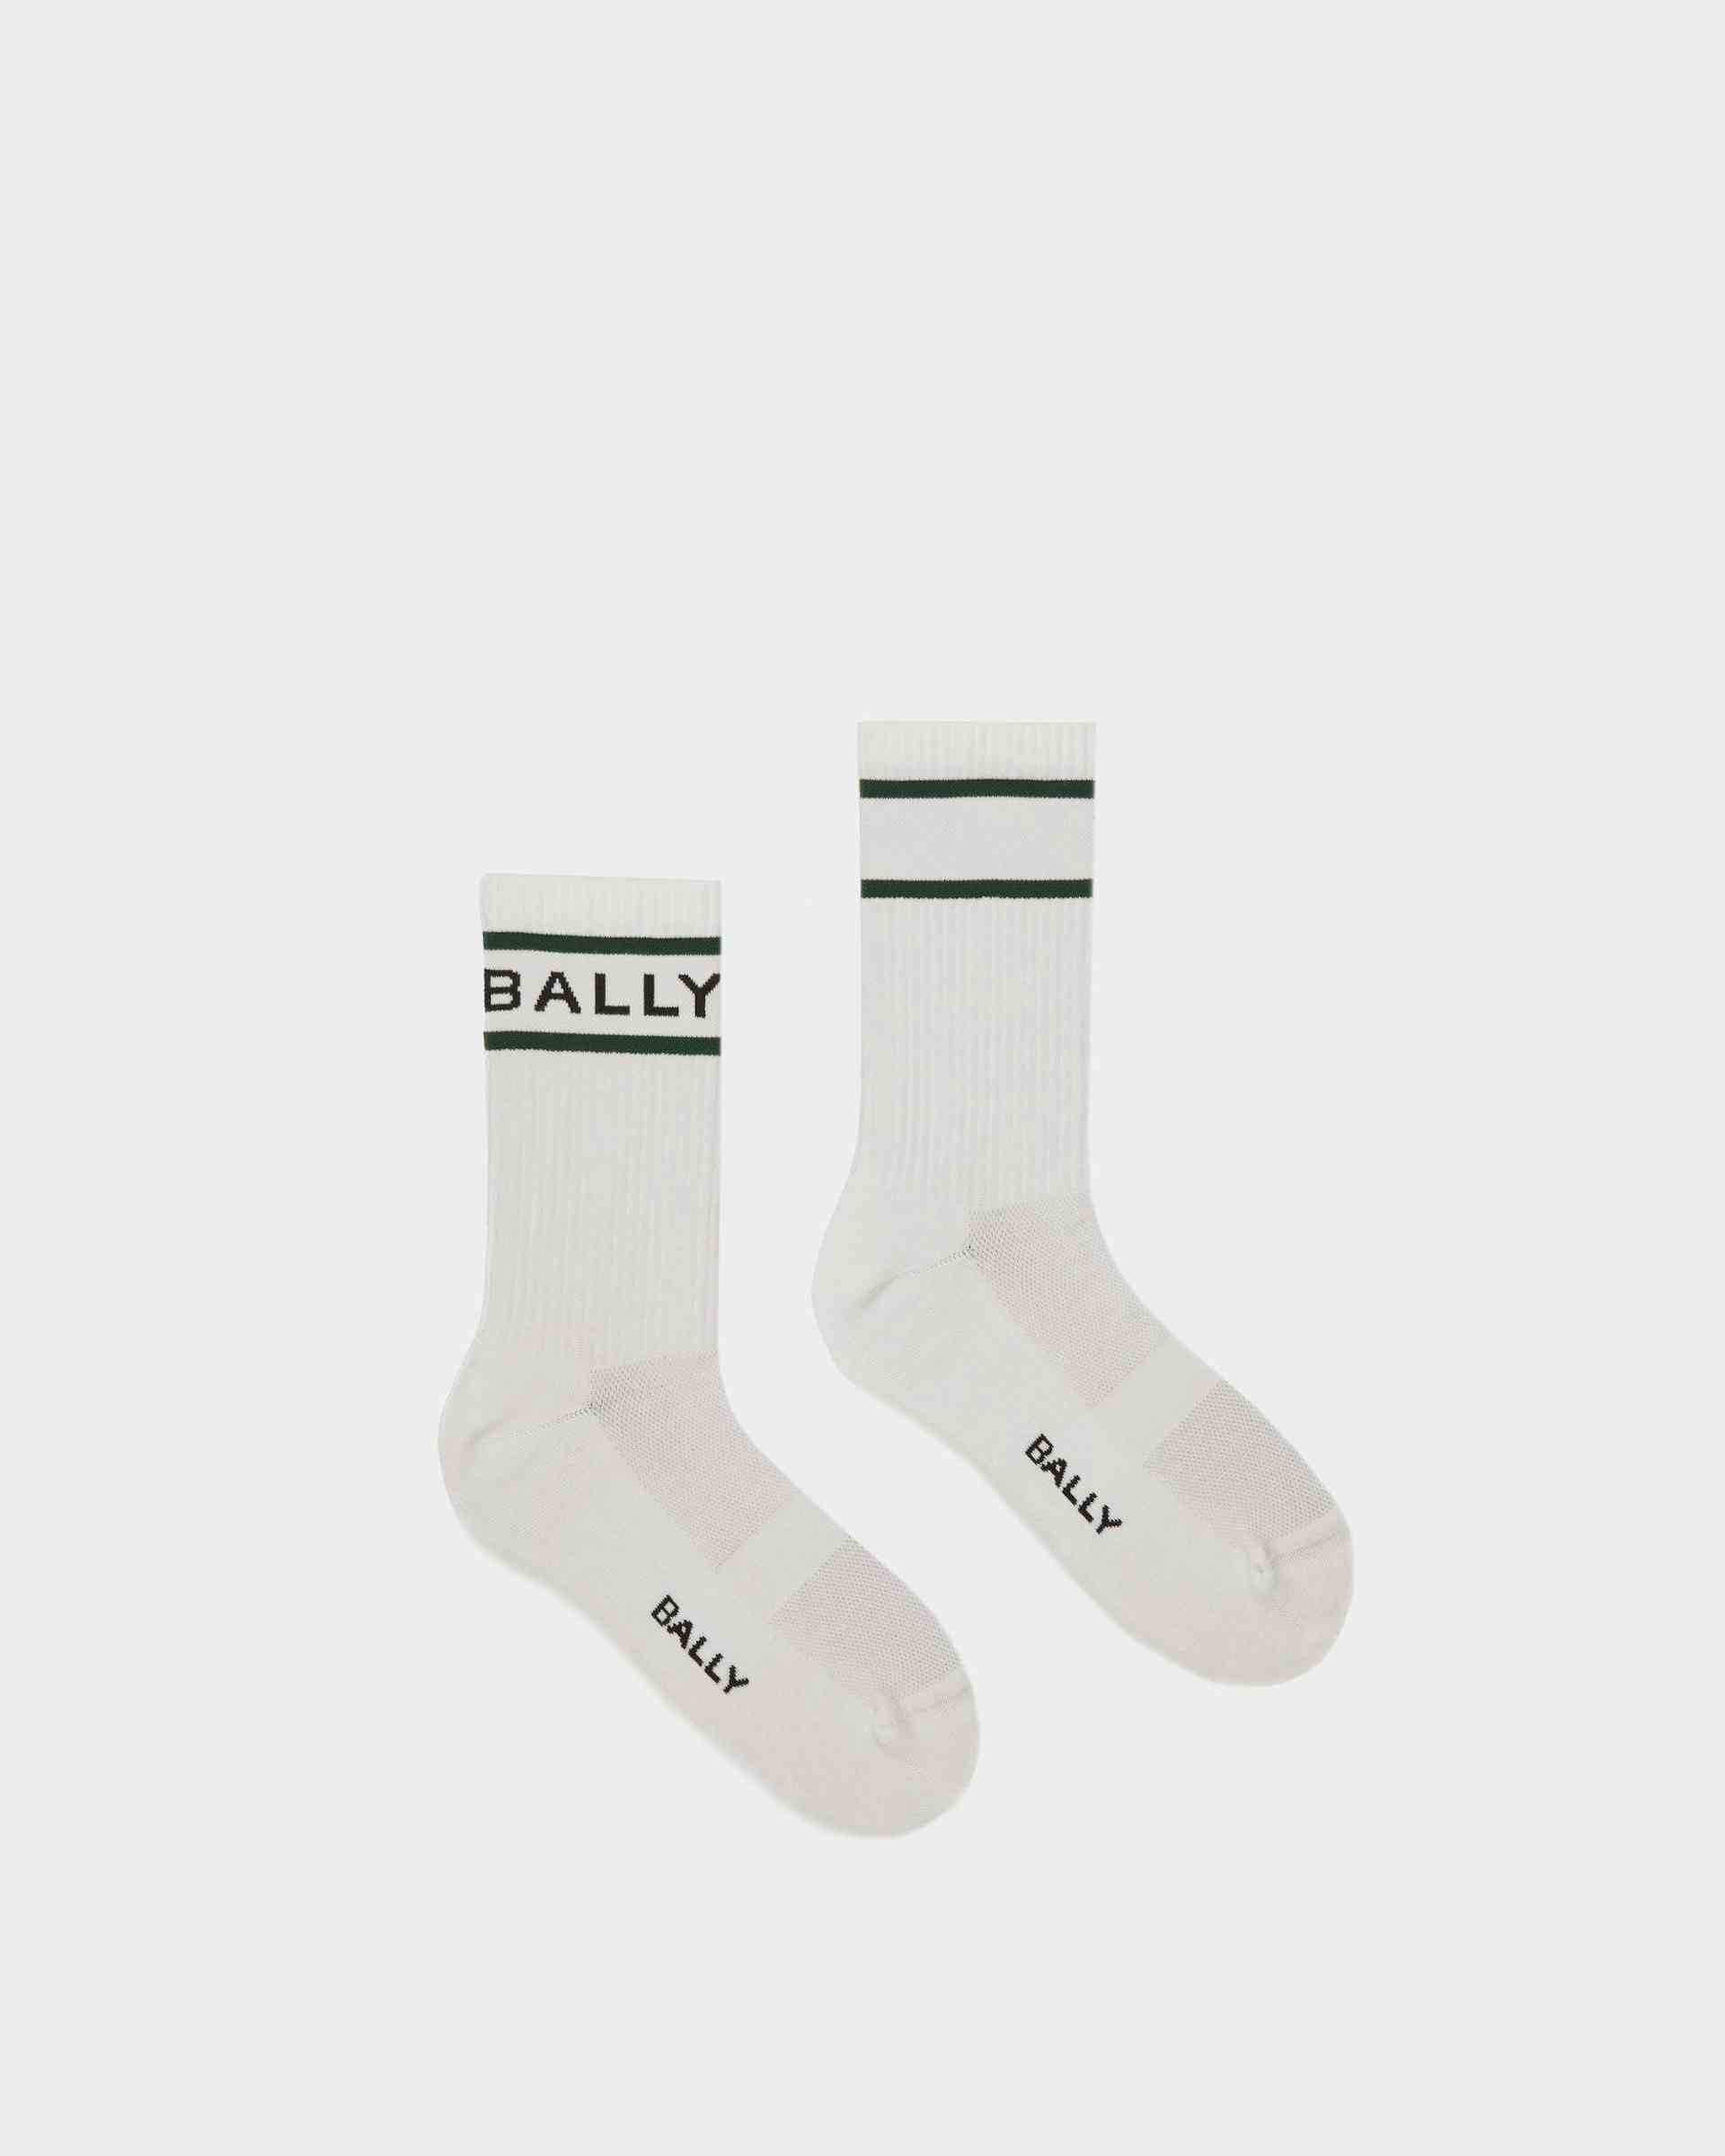 Bally Stripe Socks In White And Green - Men's - Bally